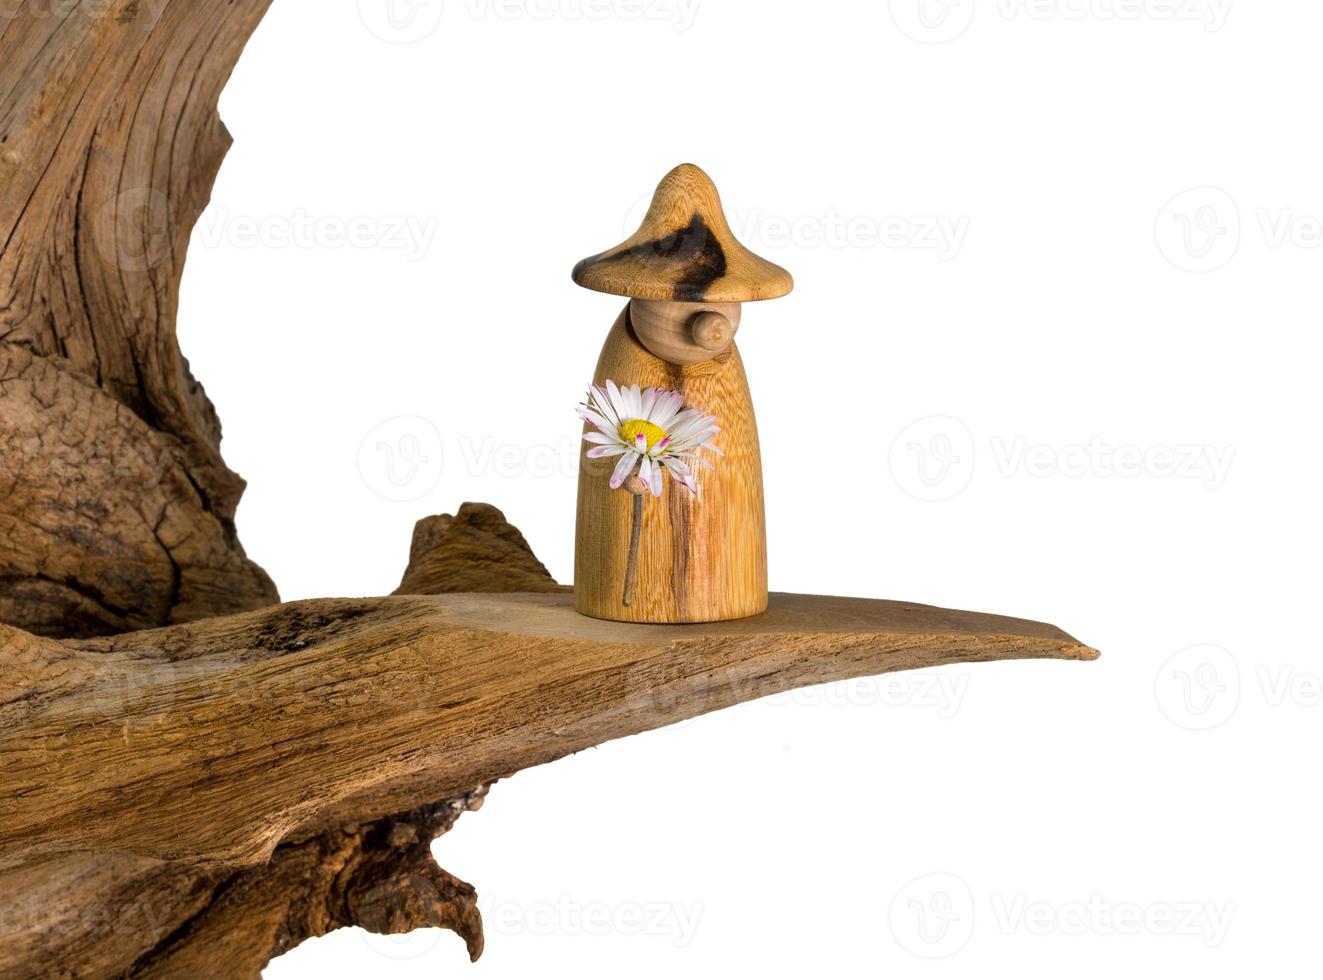 gnomo di legno tornito con una margherita in mano si erge su un vecchio ceppo di albero foto